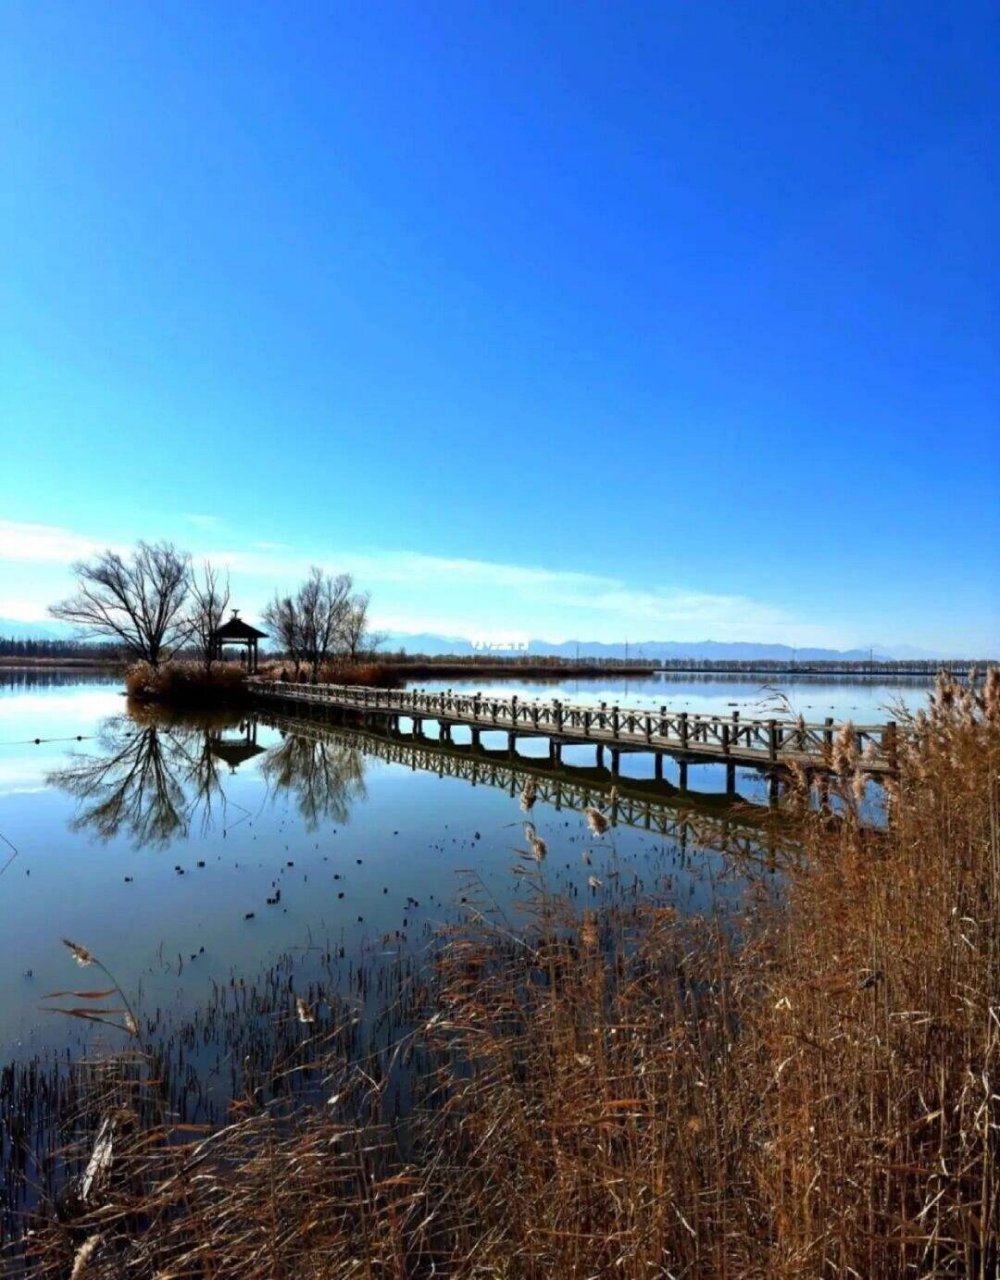 96景区介绍 野鸭湖位于北京市延庆区,是一个集湿地保护,生态观光